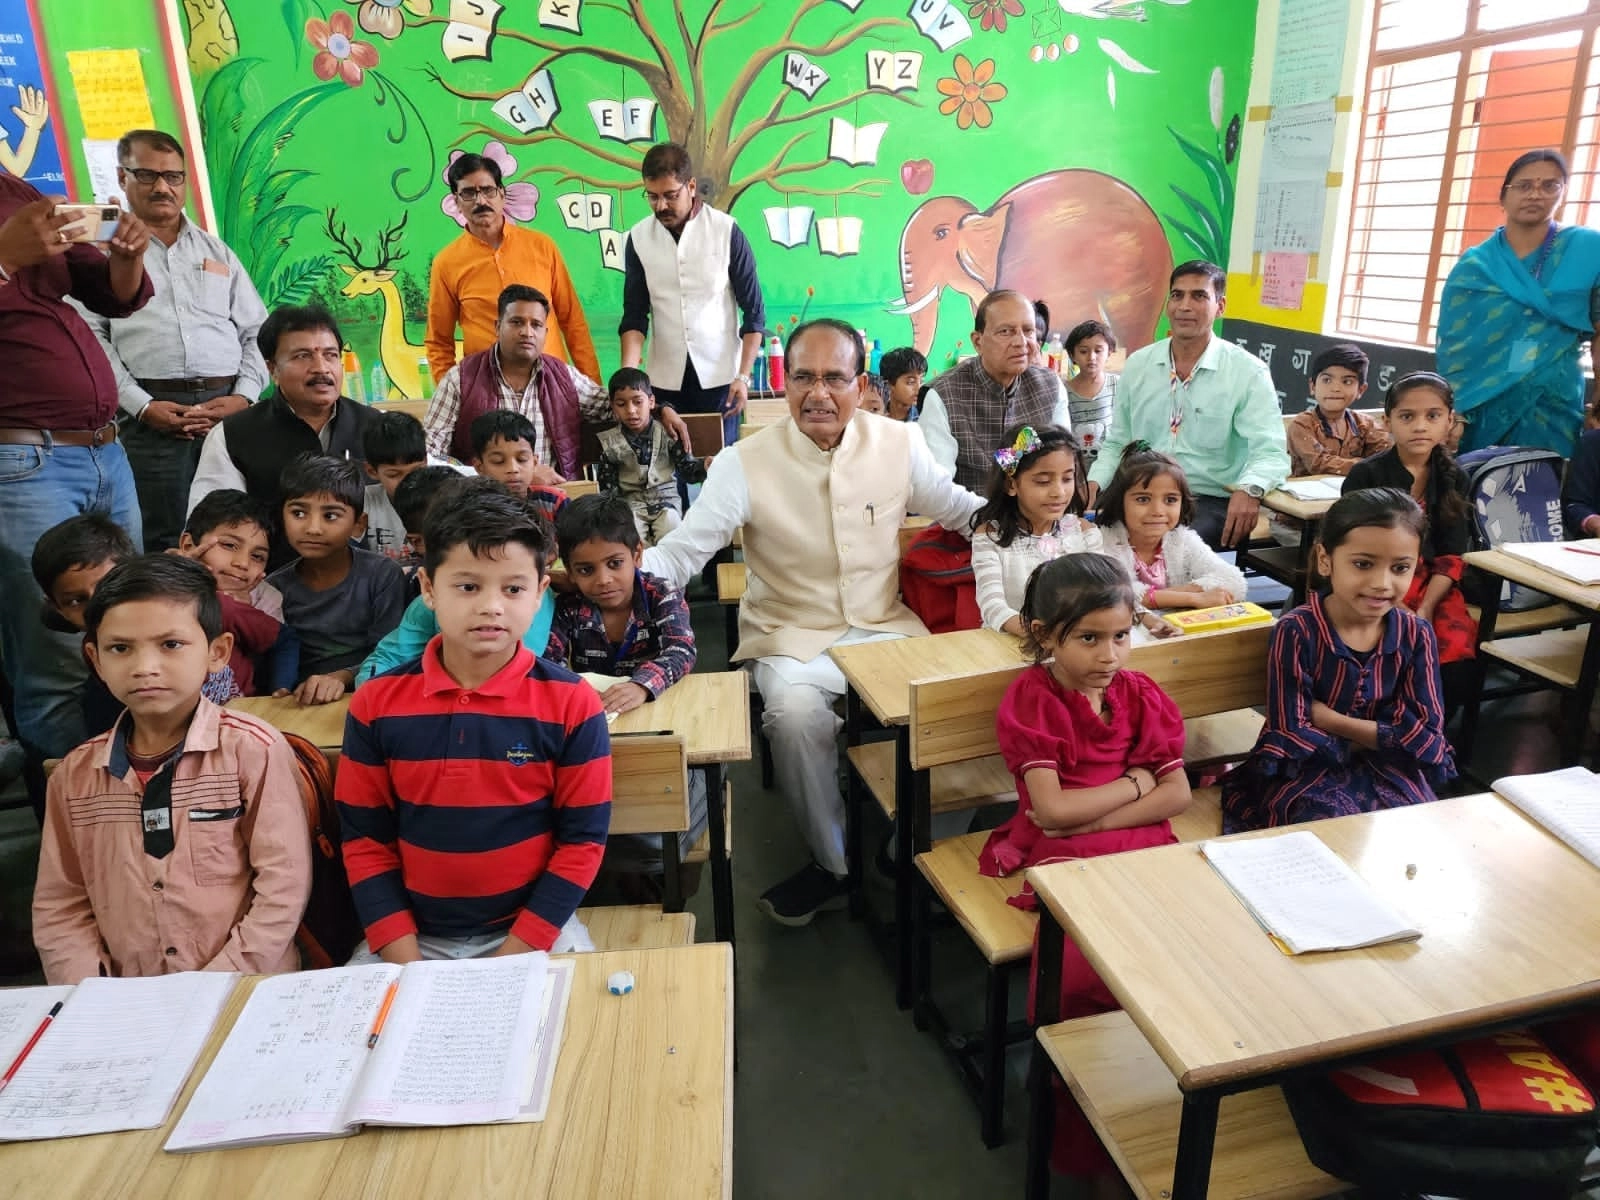 जब बच्चों ने CM शिवराज को बताया प्रधानमंत्री, अफसर ने कहा बाद में बनेंगे - When children called CM Shivraj prime minister